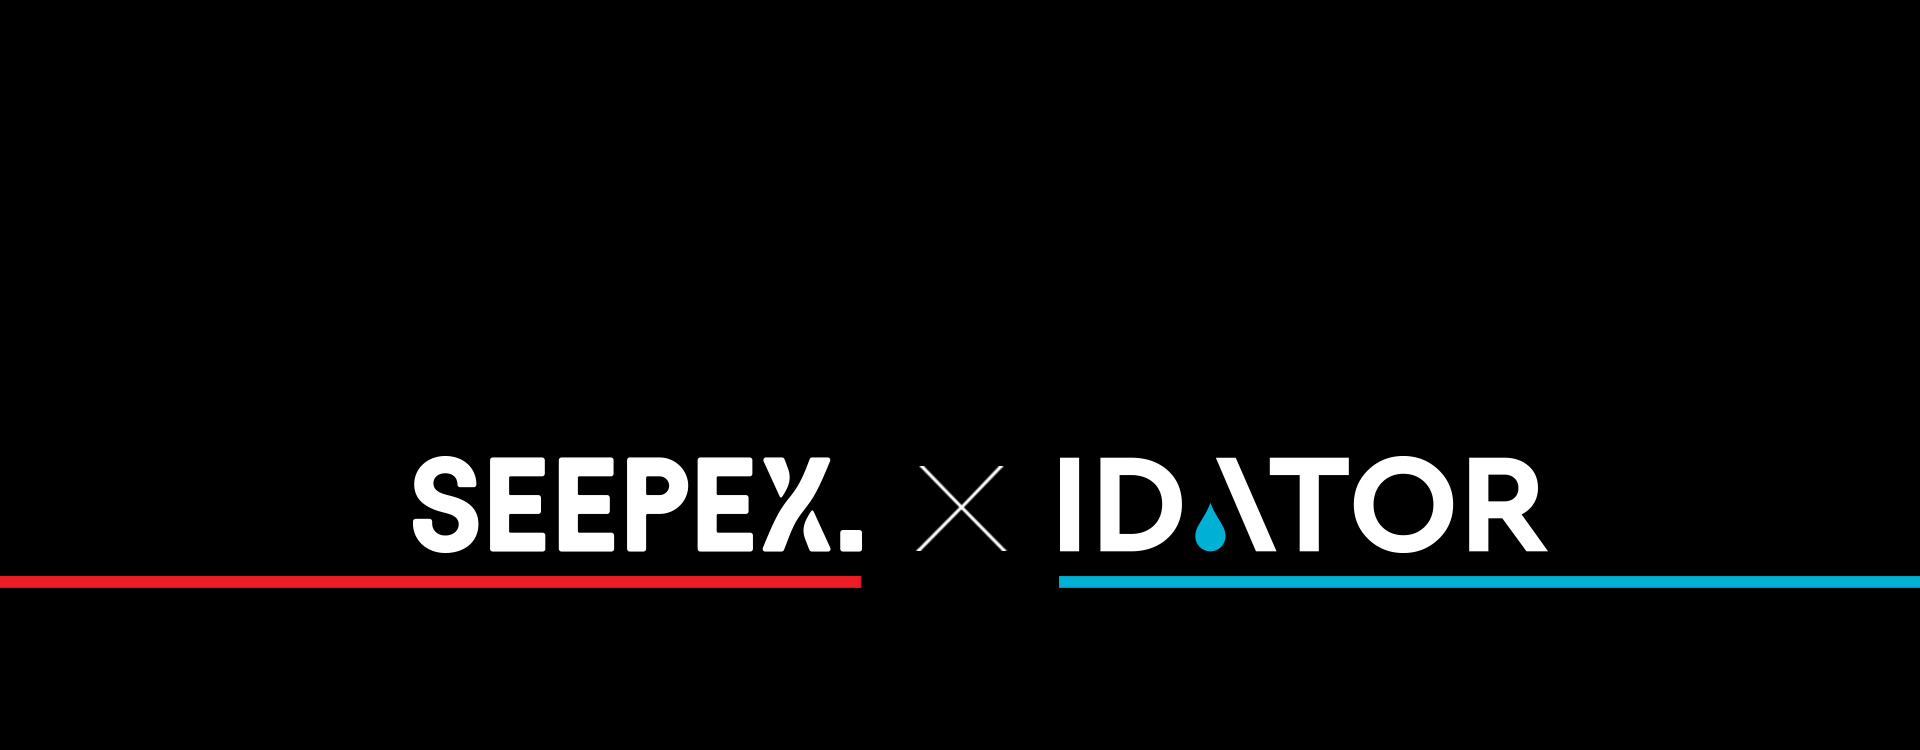 Νέα συνεργασία Idator – SEEPEX